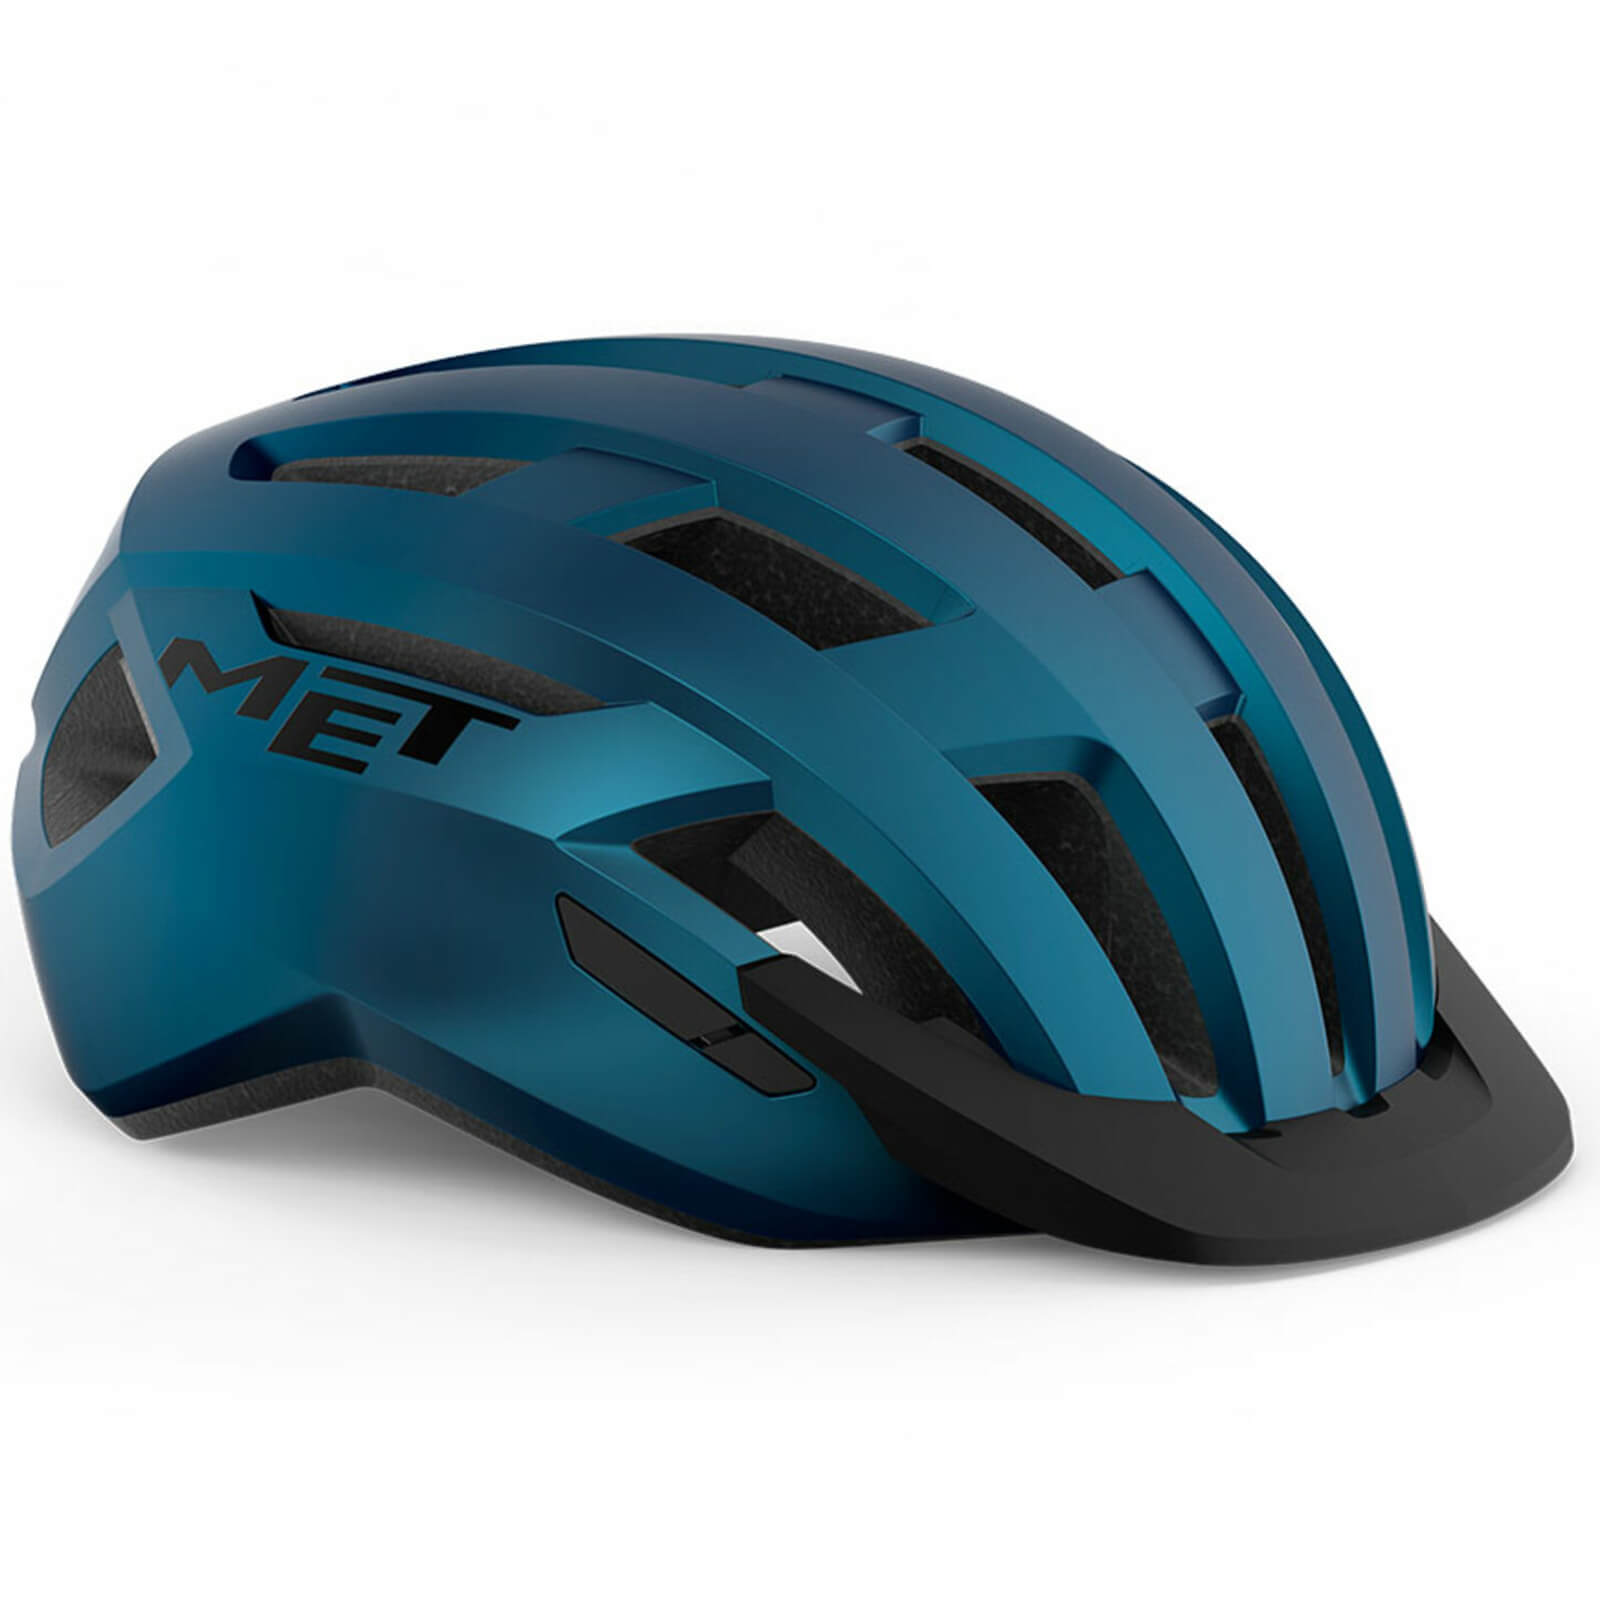 MET AllRoad MIPS Helmet - L - Blue Metallic